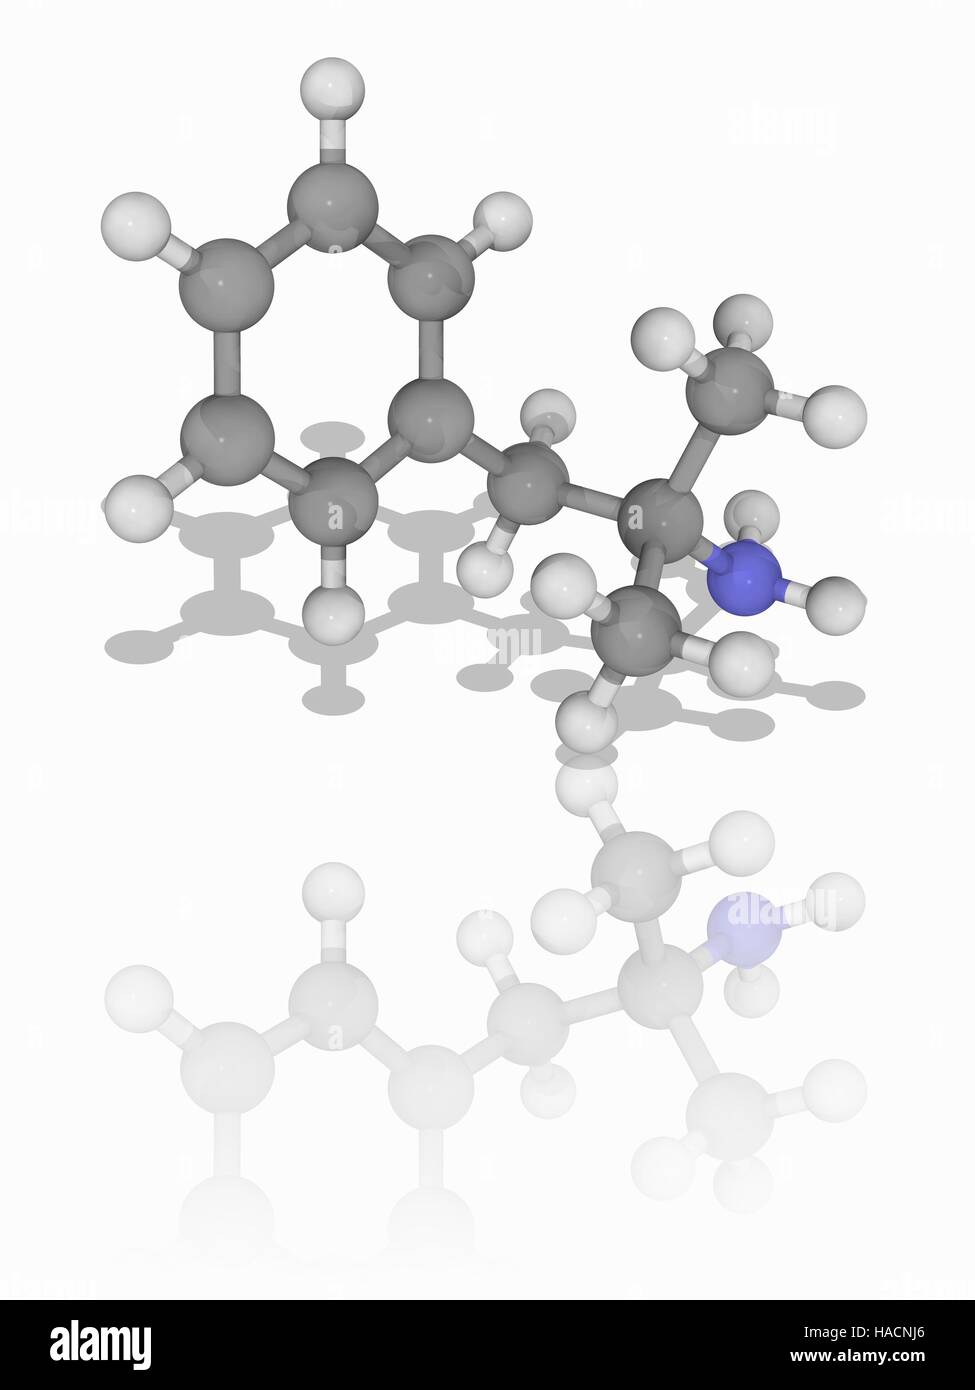 Phentermine. Molekülmodell des Drug Phentermine (C10. H15. (N), ein Psychostimulans und Phenethylamide, auch als Appetitzügler verwendet. Atome als Kugeln dargestellt werden und sind farblich gekennzeichnet: Kohlenstoff (grau), Wasserstoff (weiß) und Stickstoff (blau). Abbildung. Stockfoto